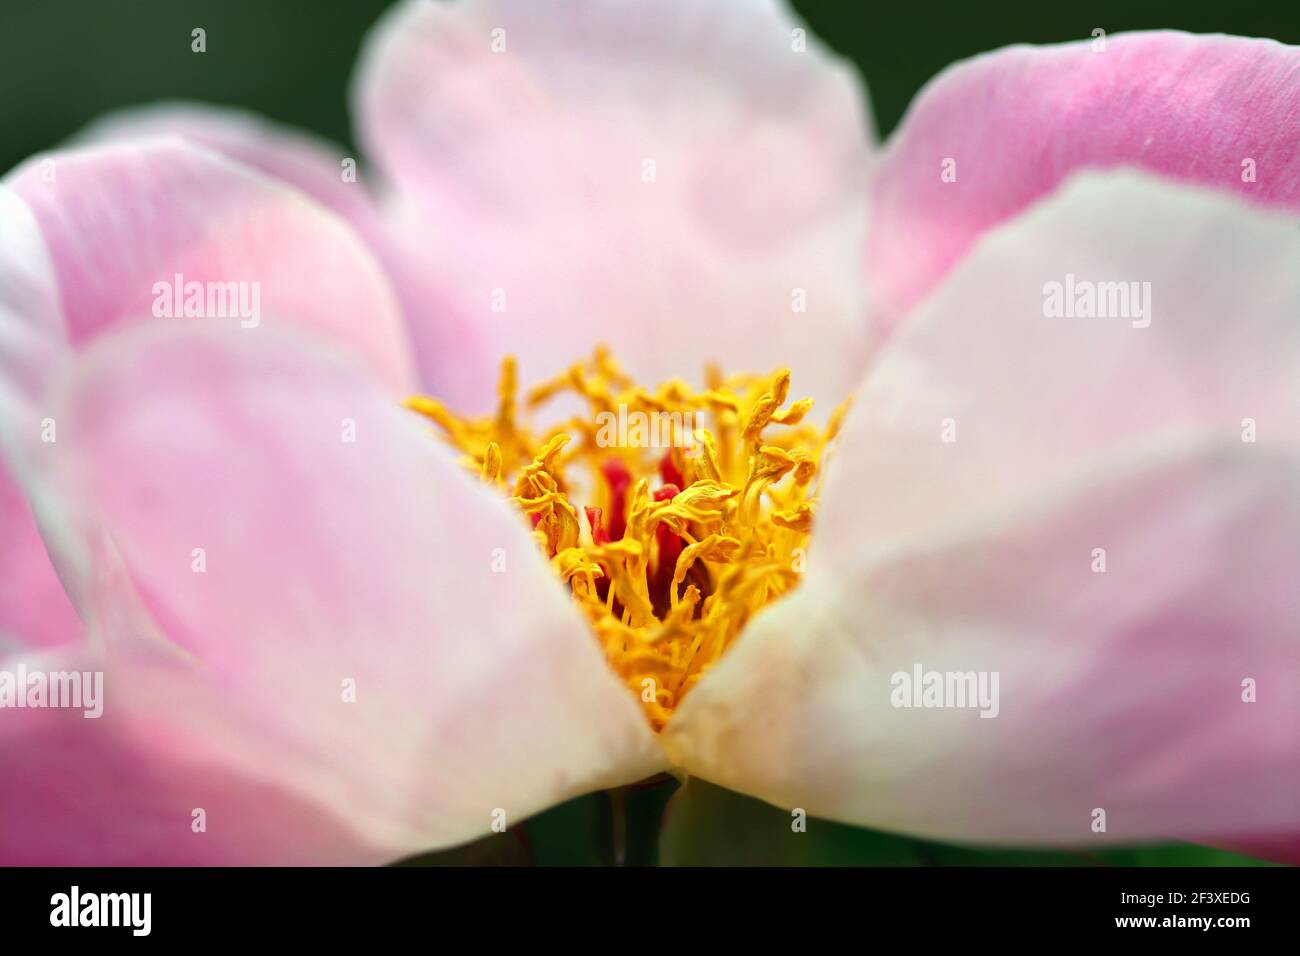 Macro shot di peonia rosa pallido; i petali profondamente lobati abbracciano lo stampino giallo tentacled Foto Stock